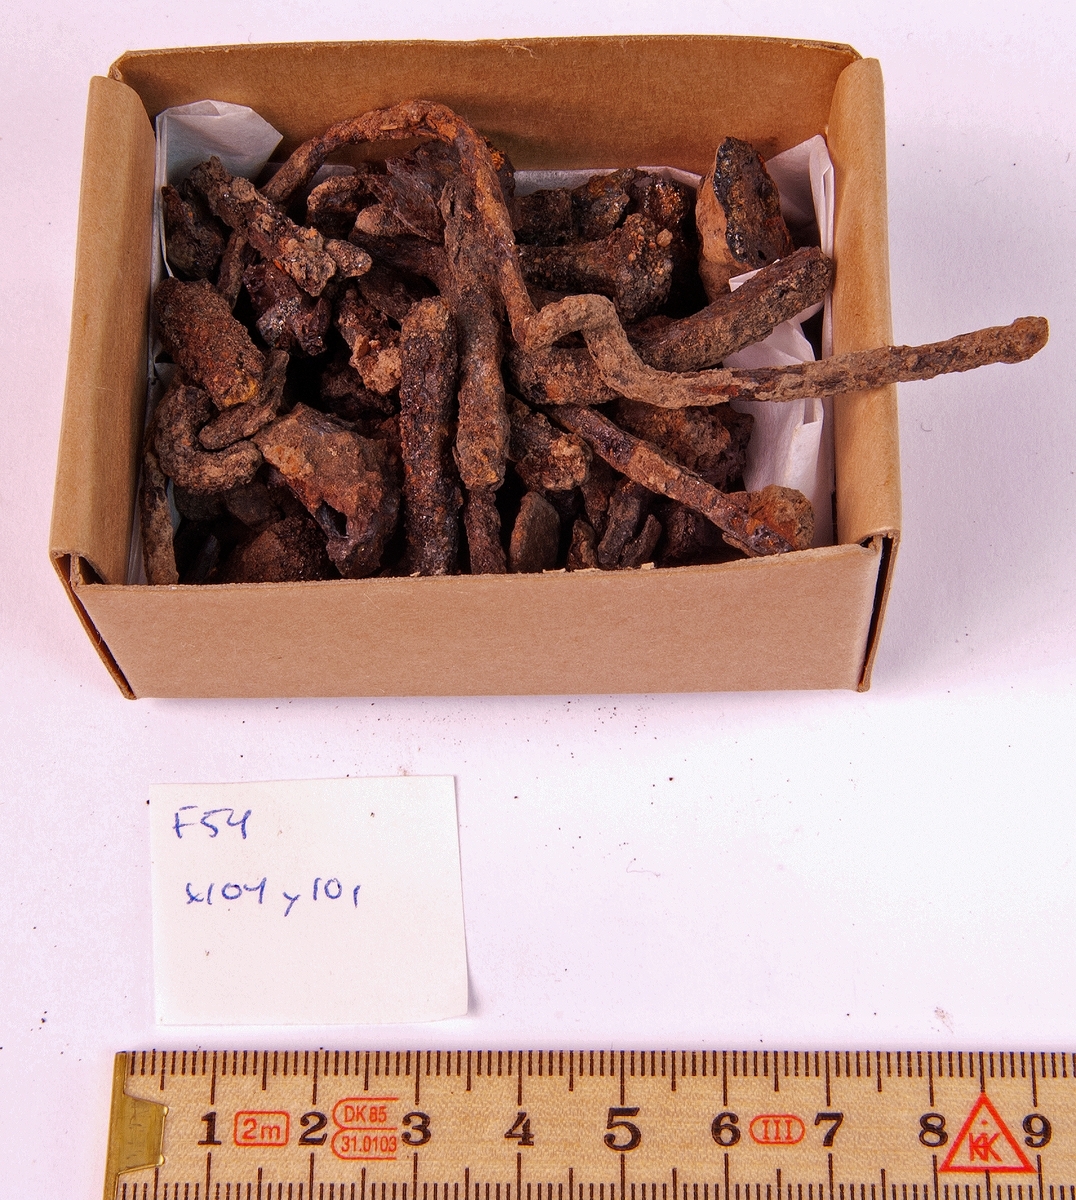 Fynd från arkeologisk undersökning 1993 i Österfärnebo, Berg 1:3
Gravhög.

Fynden består bl.a. av ett svärd, böjt, en spjutspets, ett bronsspänne, brända ben, keramik, slagg och järnfragment.